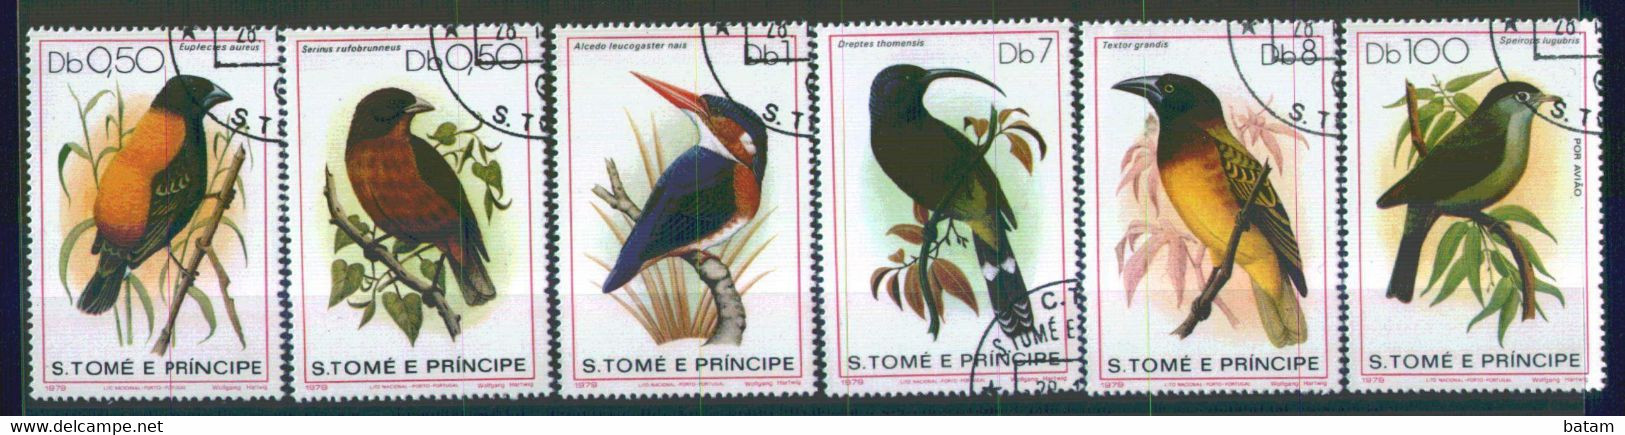 210 - Sao Tome And Principe 1979 - Bids - Used Set - Verzamelingen, Voorwerpen & Reeksen